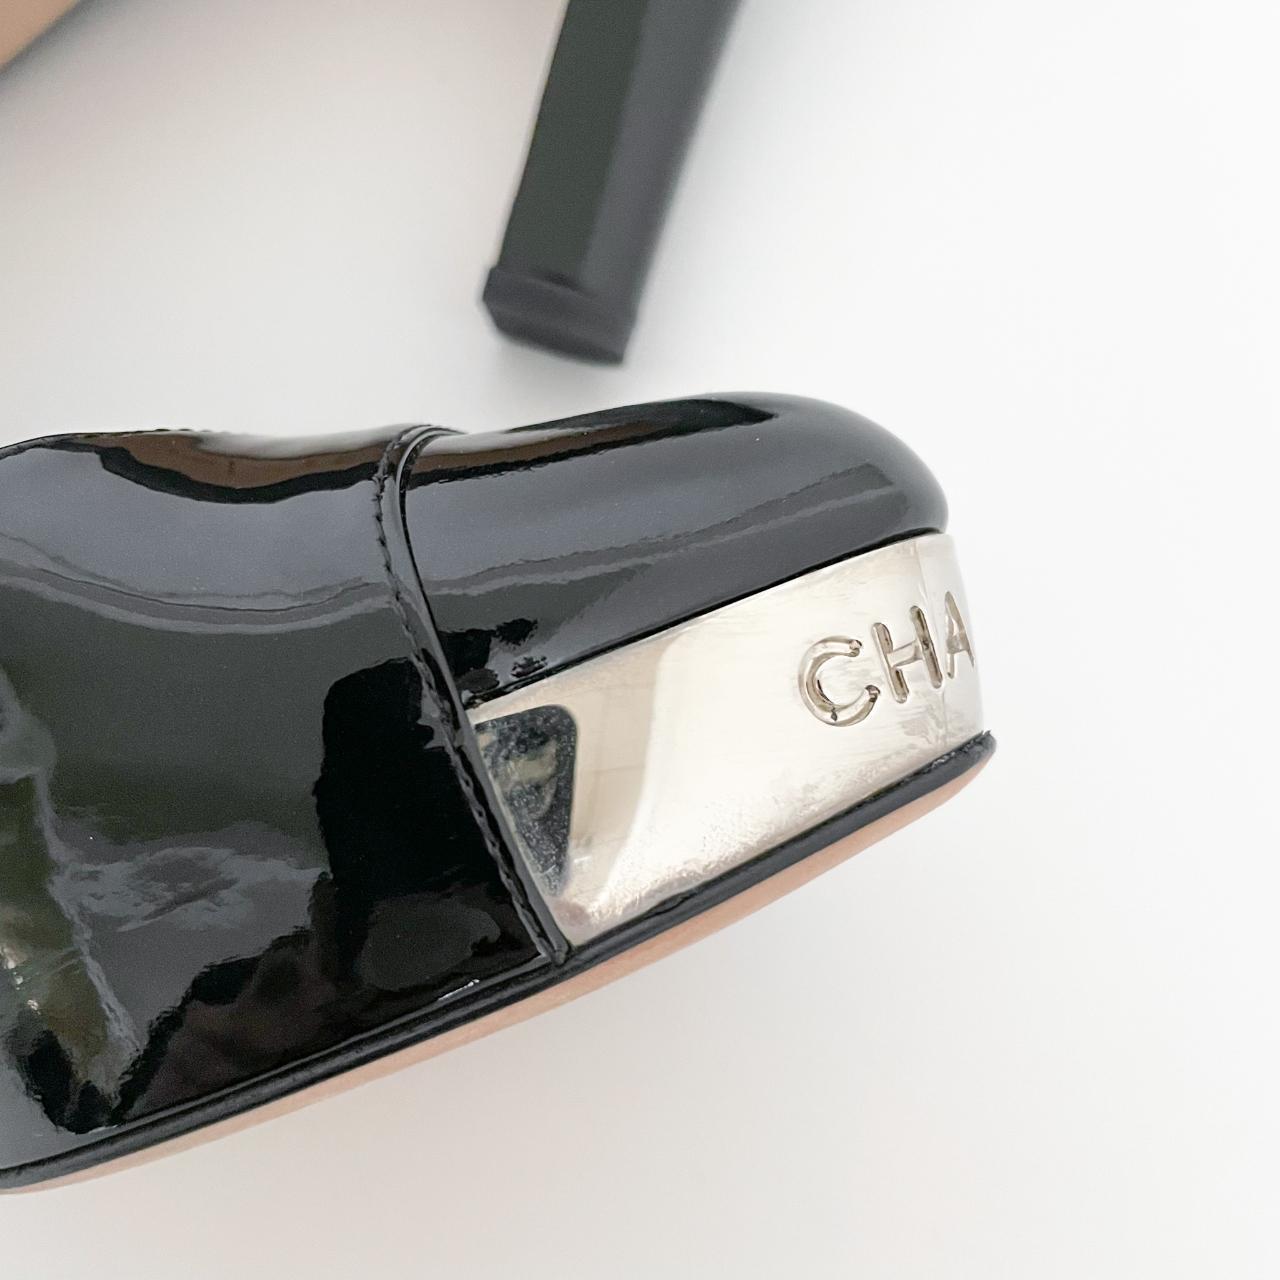 Chanel Platform Pumps in Black Patent Leather Size - Depop